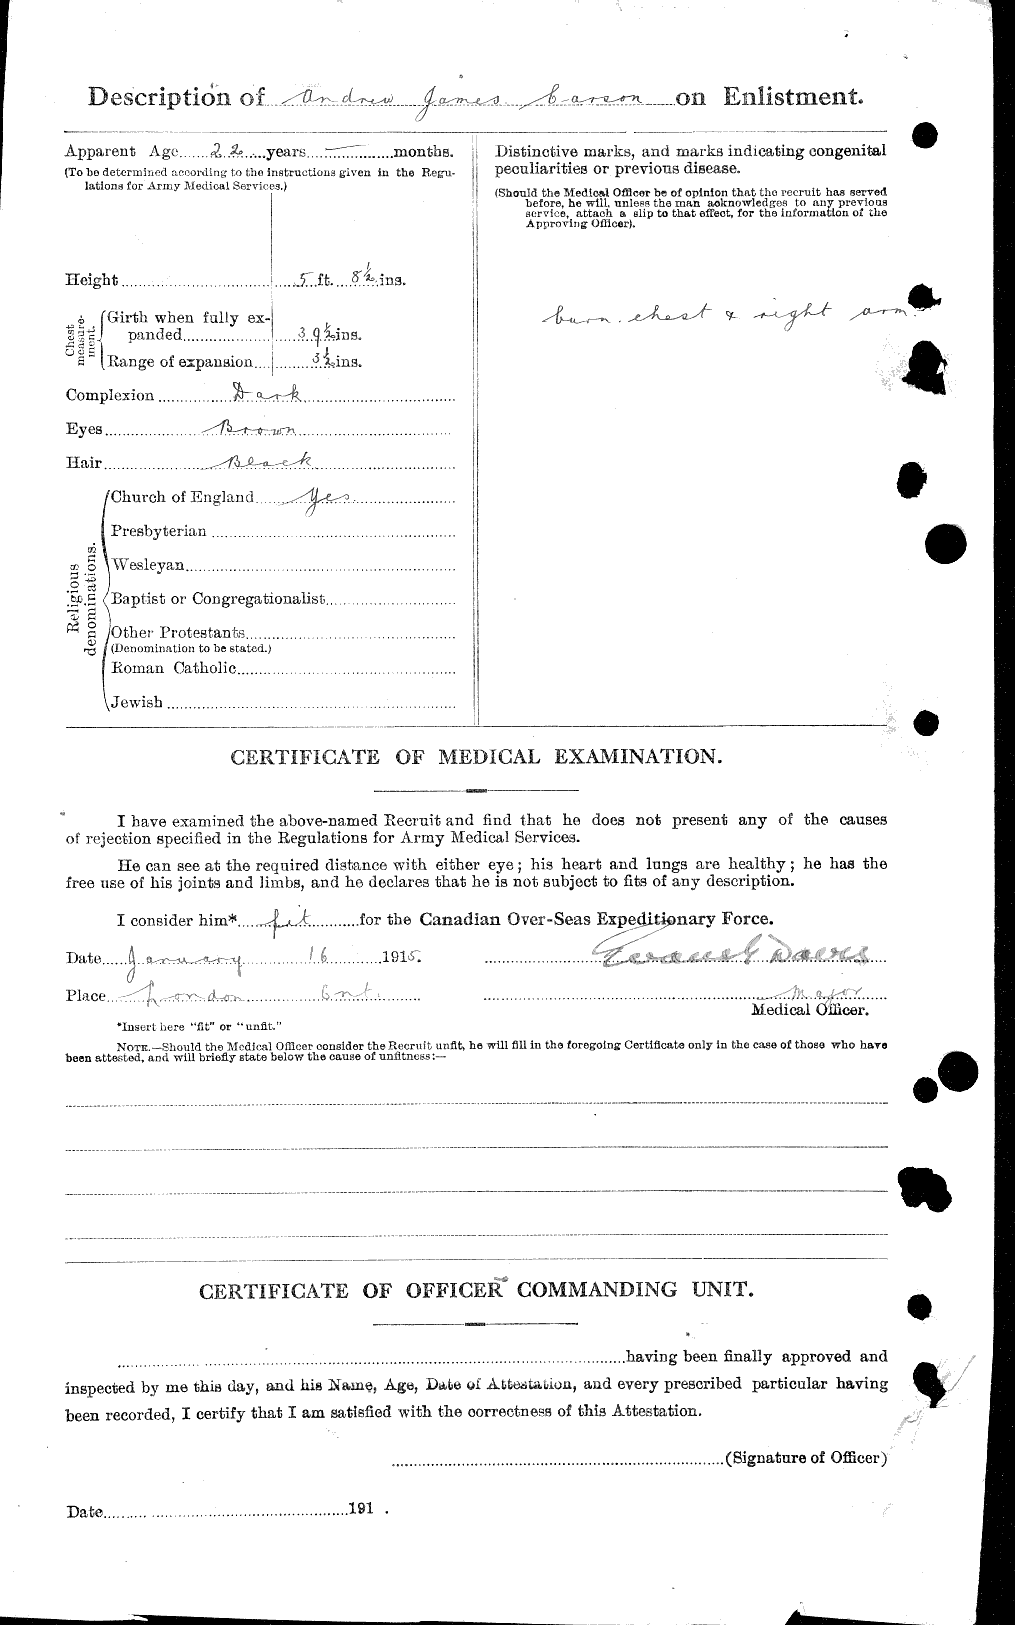 Dossiers du Personnel de la Première Guerre mondiale - CEC 005820b